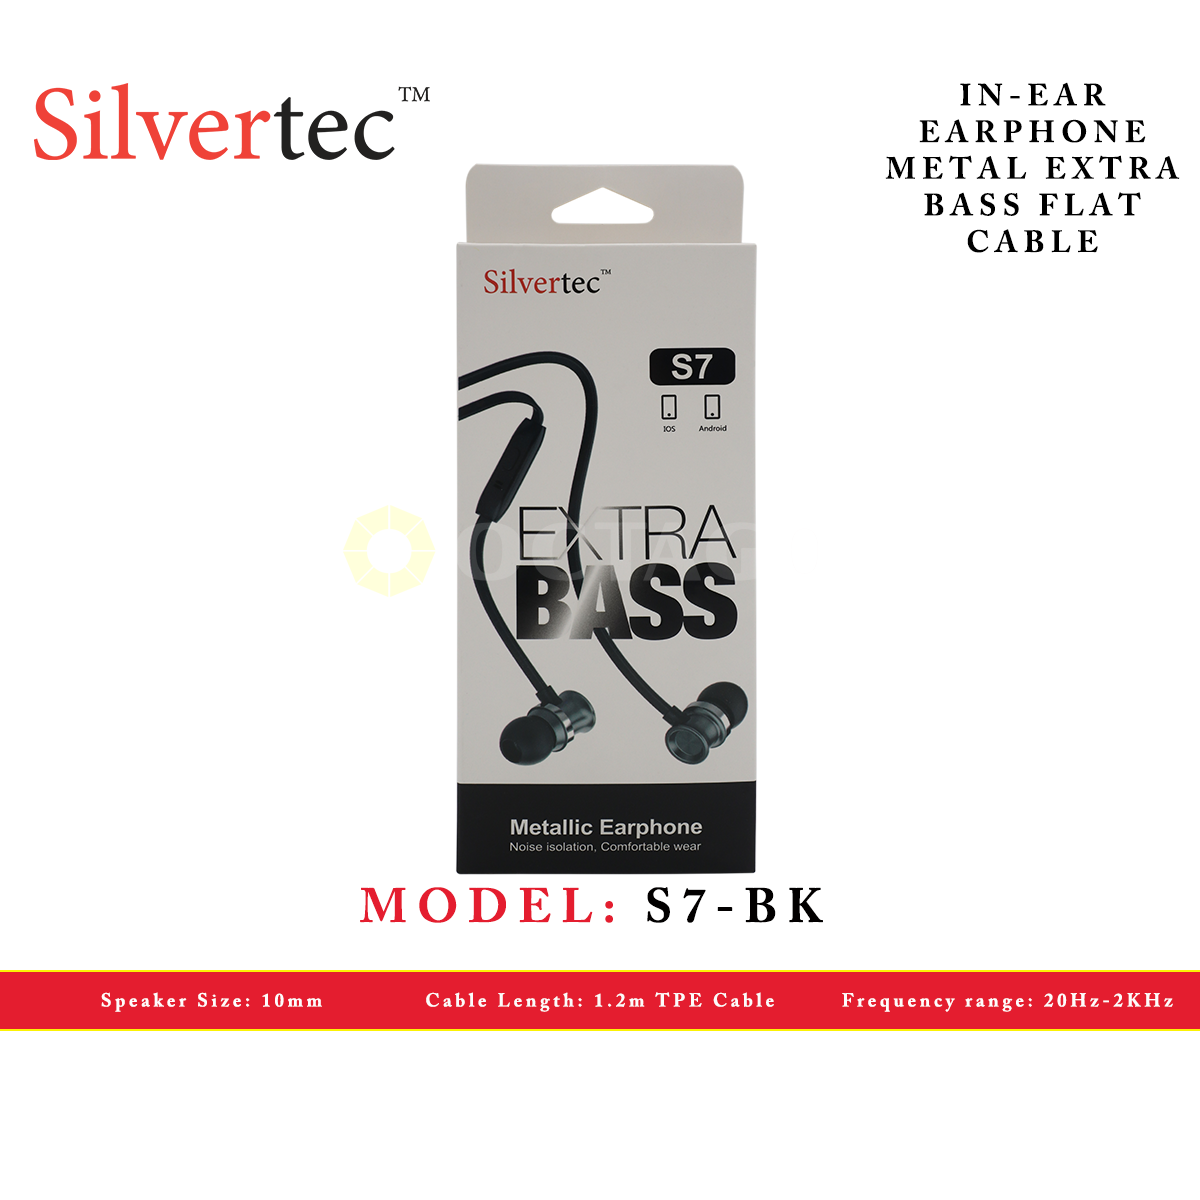 SILVERTEC S7-BK BLACK IN-EAR EARPHONE